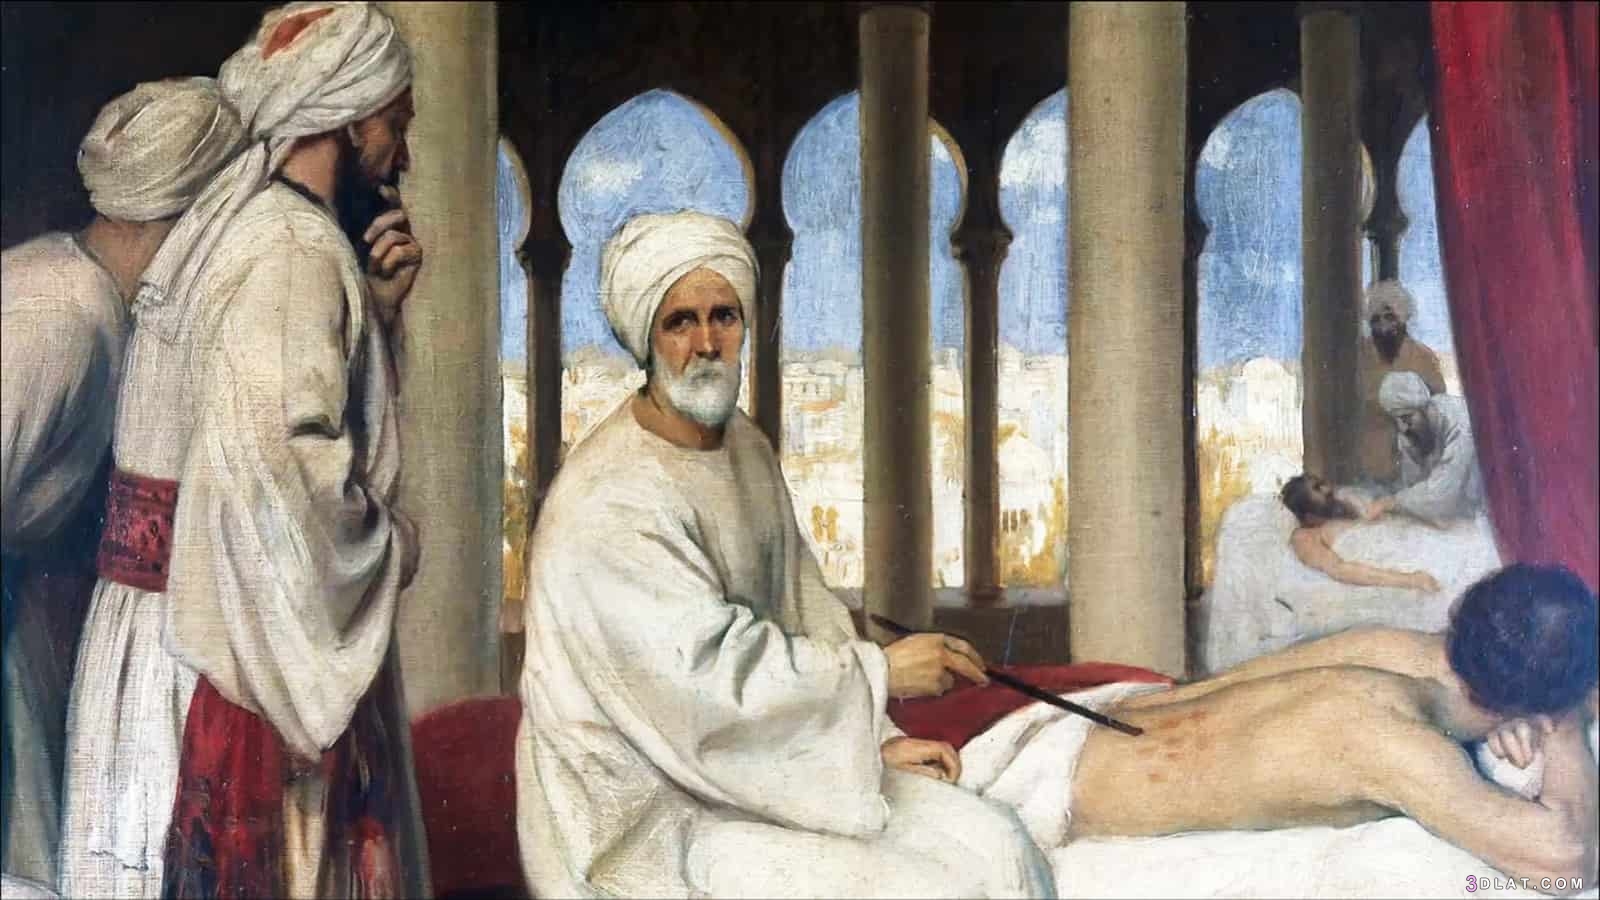 من علماء العرب في الطب،ابن النفيس وما قدمه في مجال الطب،الانجازات التي حققه